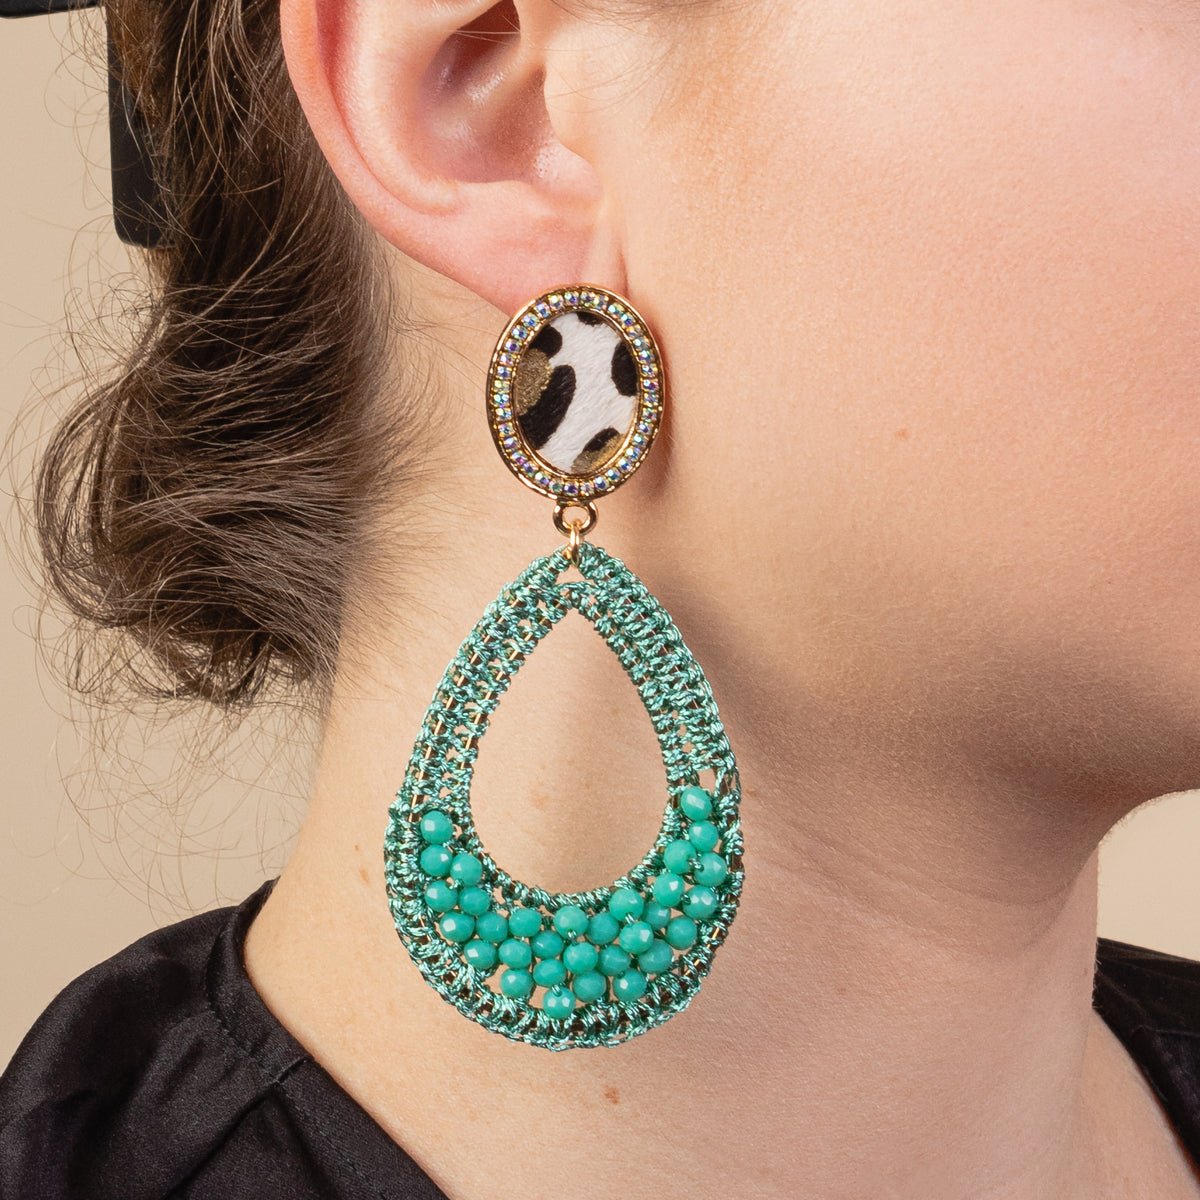 1304 - Animal Print Hoop Earrings - Turquoise